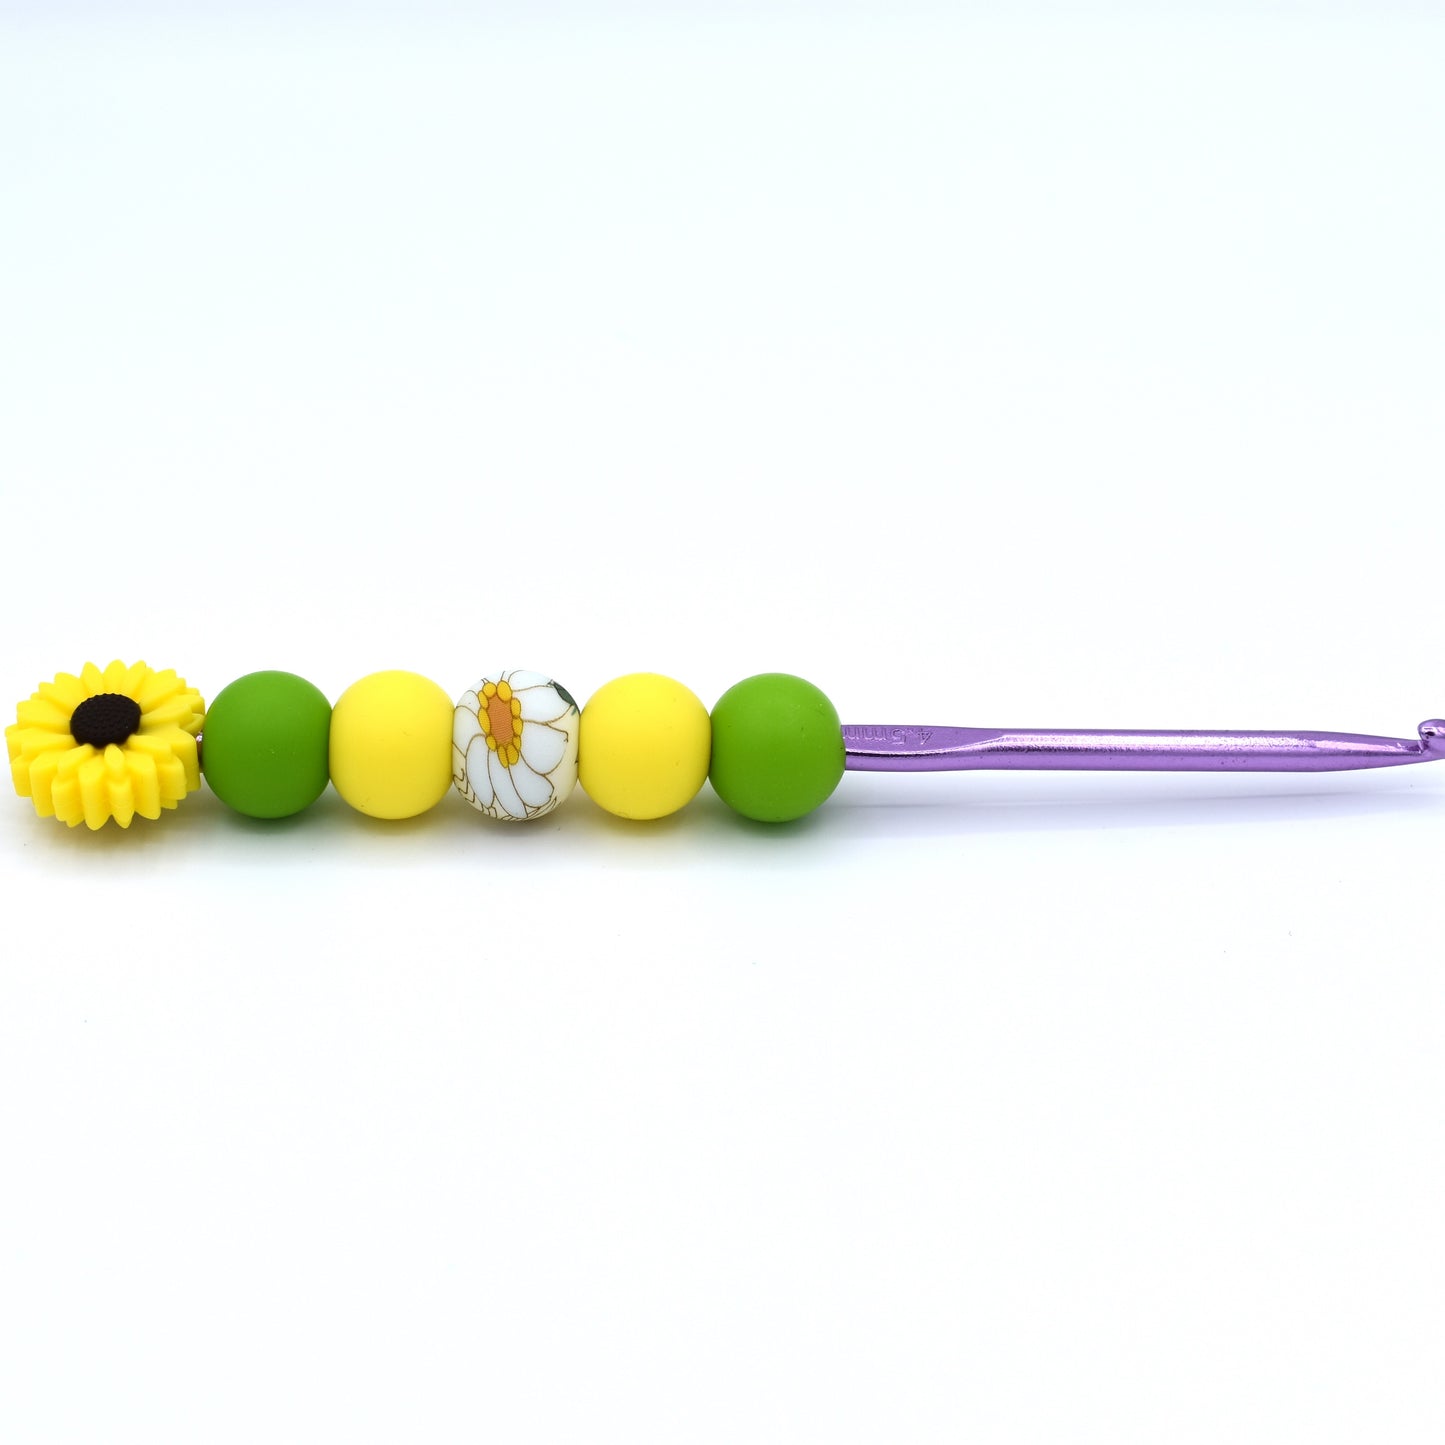 Sunflower Crochet Hook 4.5mm